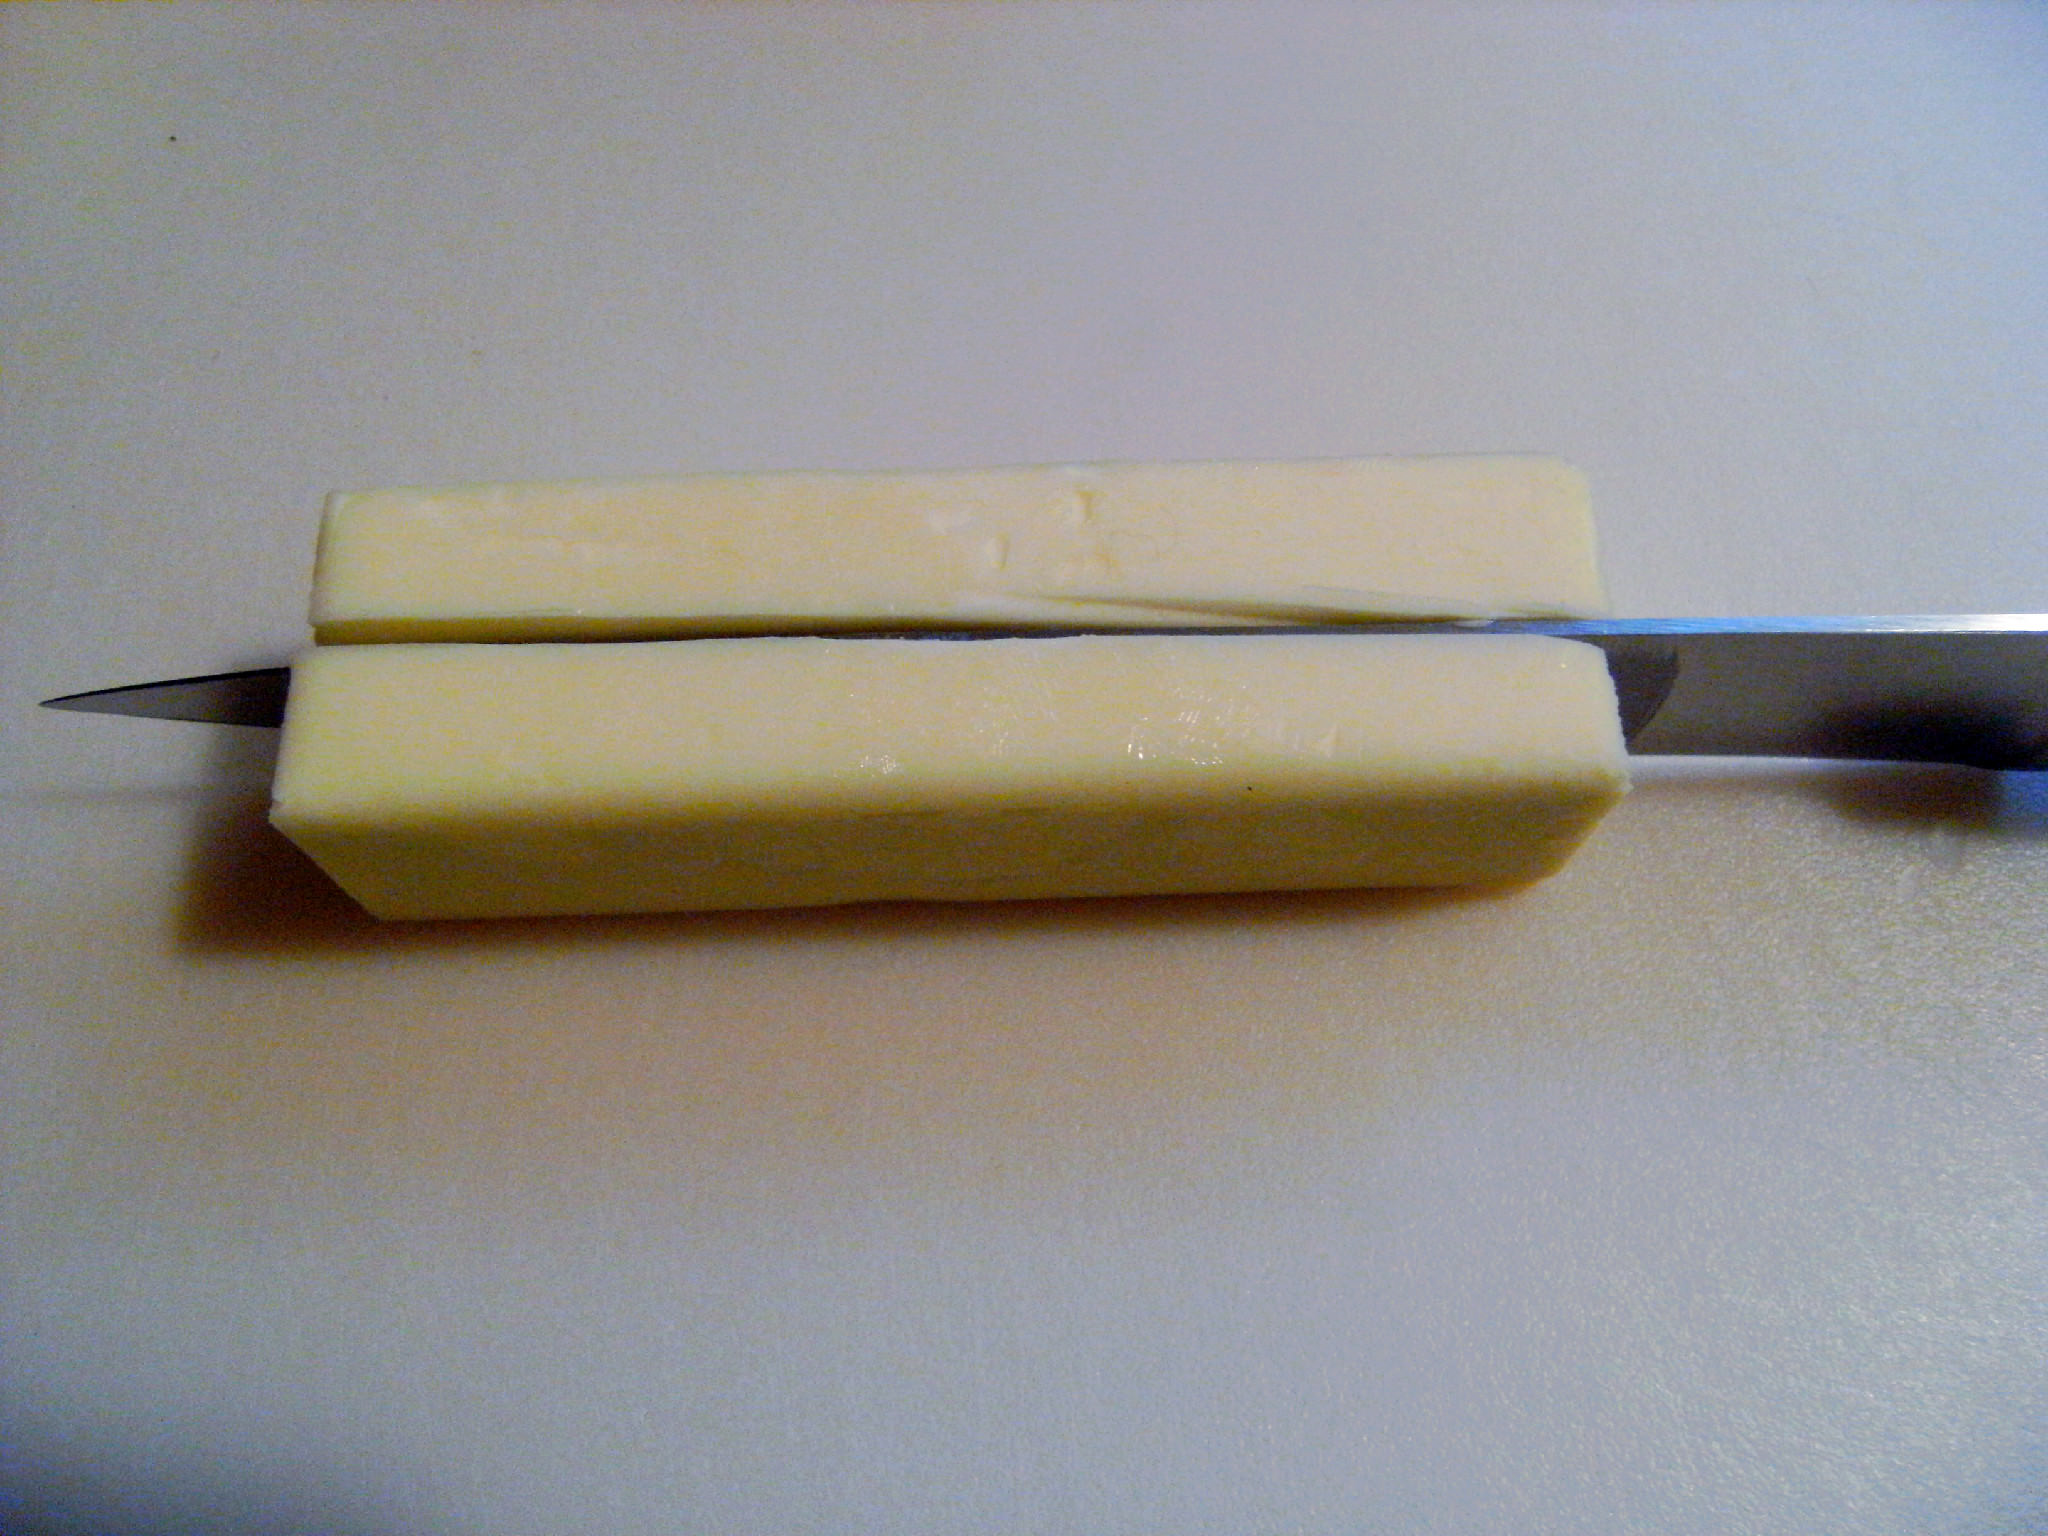 a stick of butter, cut in half